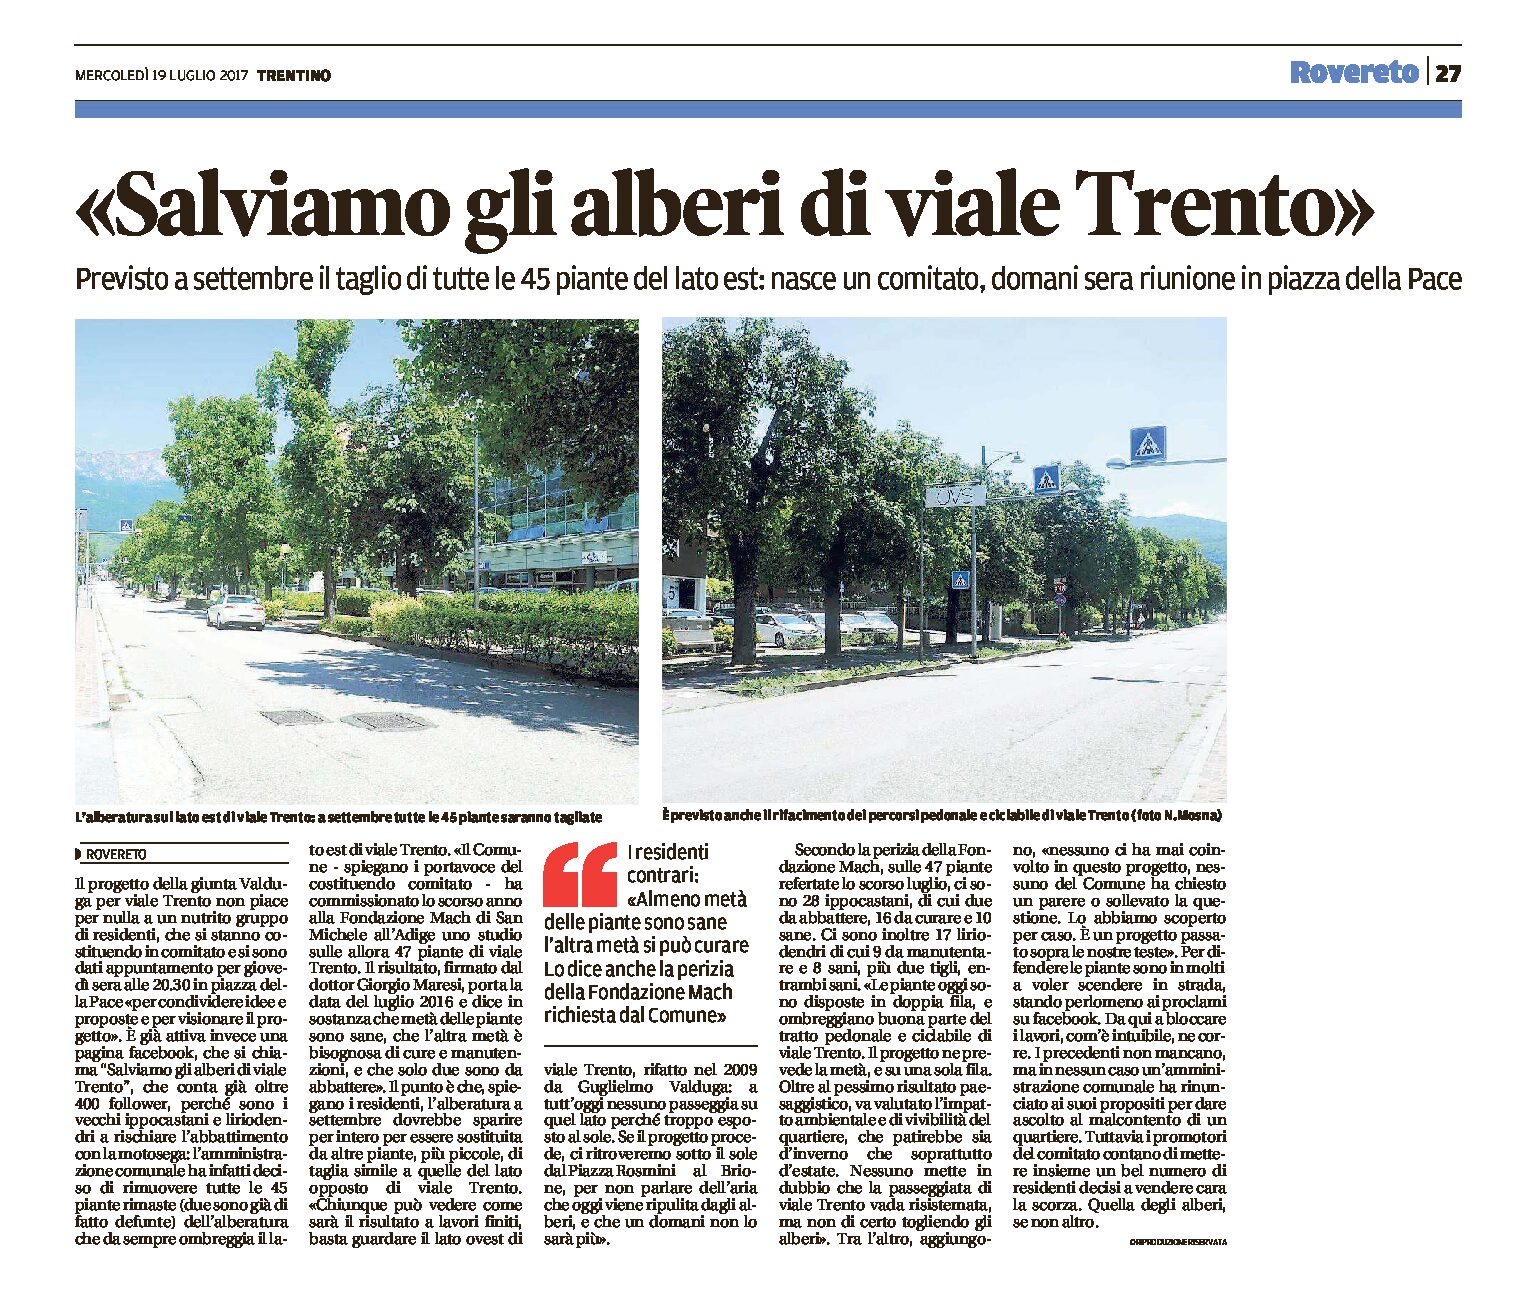 Rovereto: “salviamo gli alberi di viale Trento”. A settembre il taglio delle 45 piante del lato est